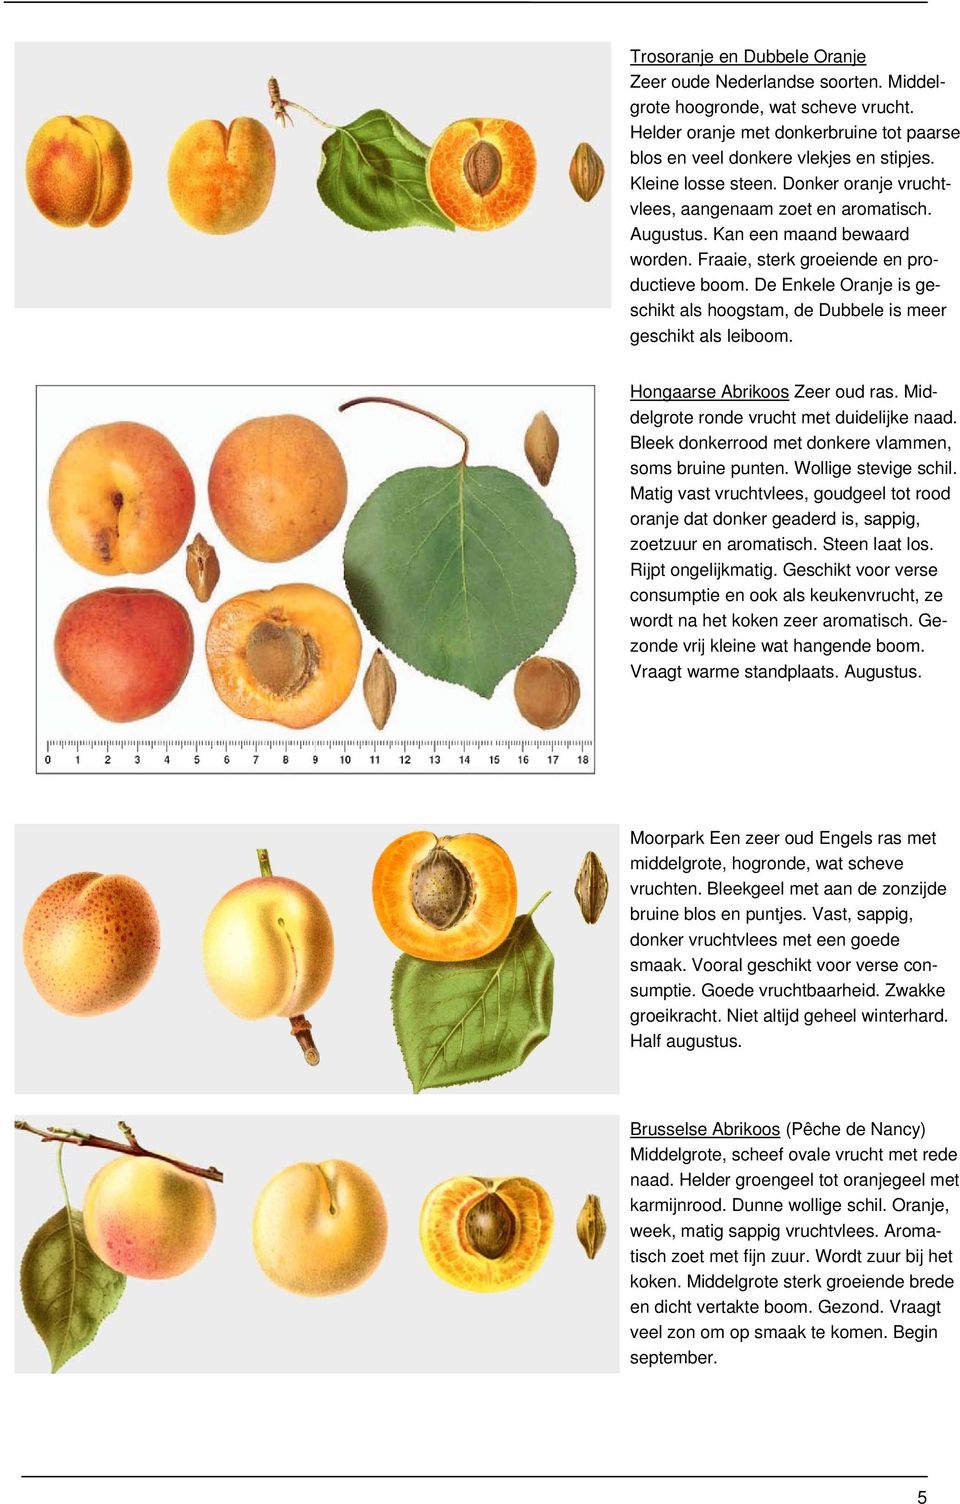 De Enkele Oranje is geschikt als hoogstam, de Dubbele is meer geschikt als leiboom. Hongaarse Abrikoos Zeer oud ras. Middelgrote ronde vrucht met duidelijke naad.